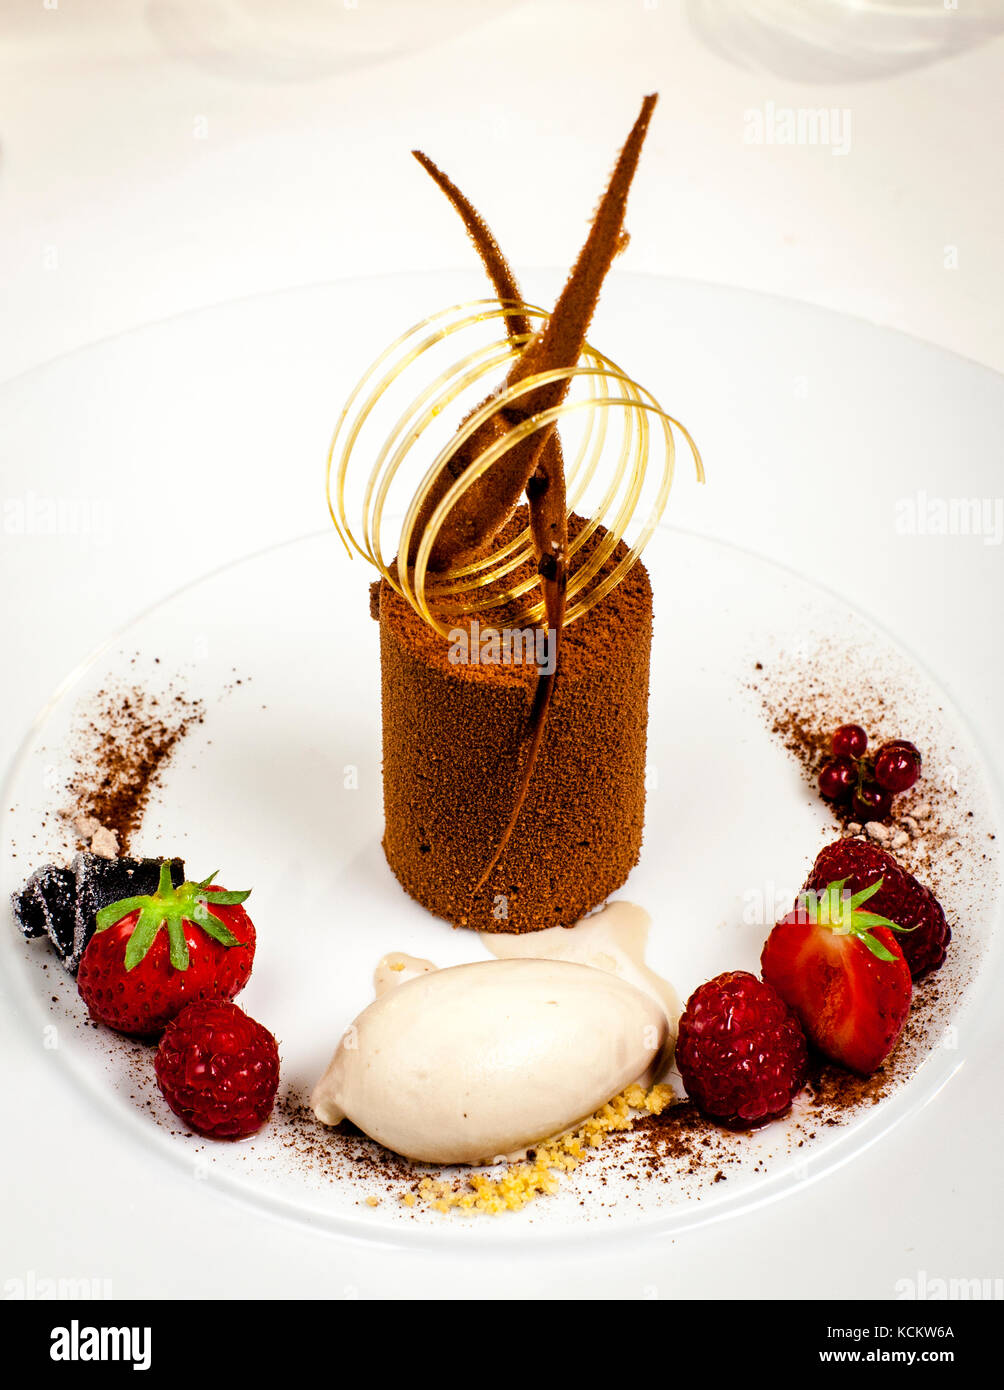 Les merveilleux desserts comme ce gâteau choc au poivre de Timut sur la glace Tonka sont décorés par Florent Jestin. Chocolate Desert by Michelin Star Chef Loïc le bail Banque D'Images